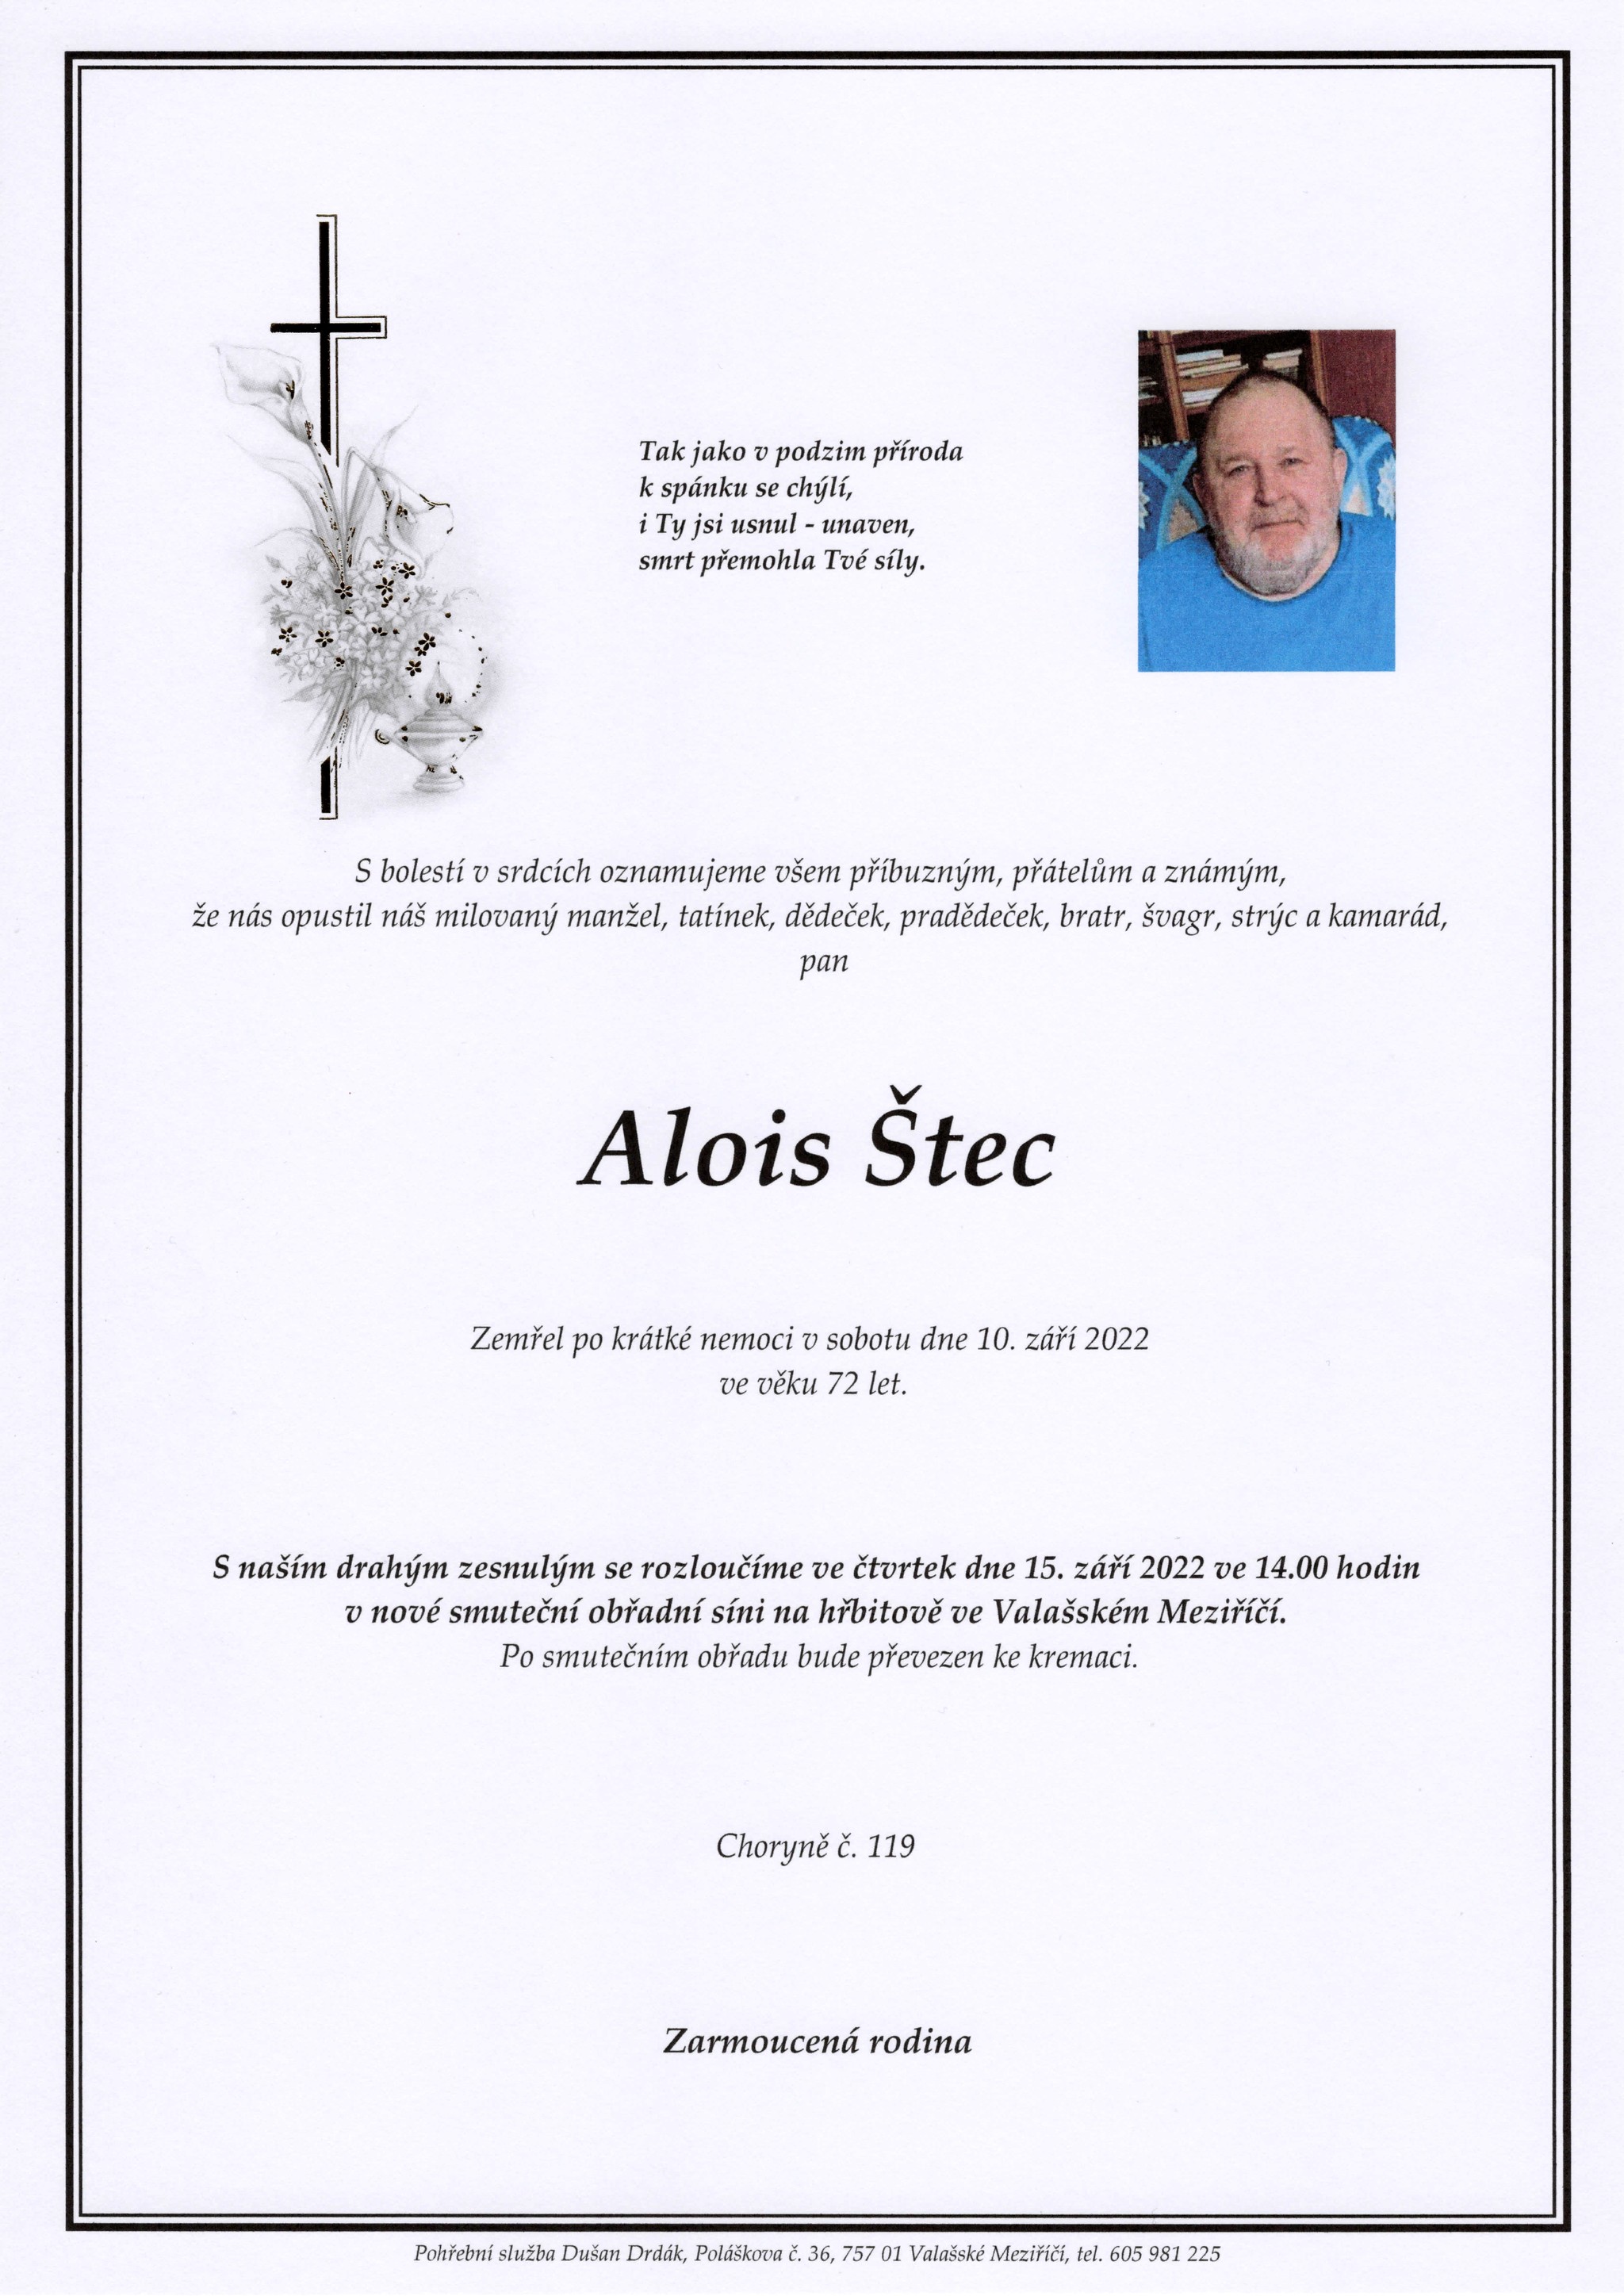 Alois Štec